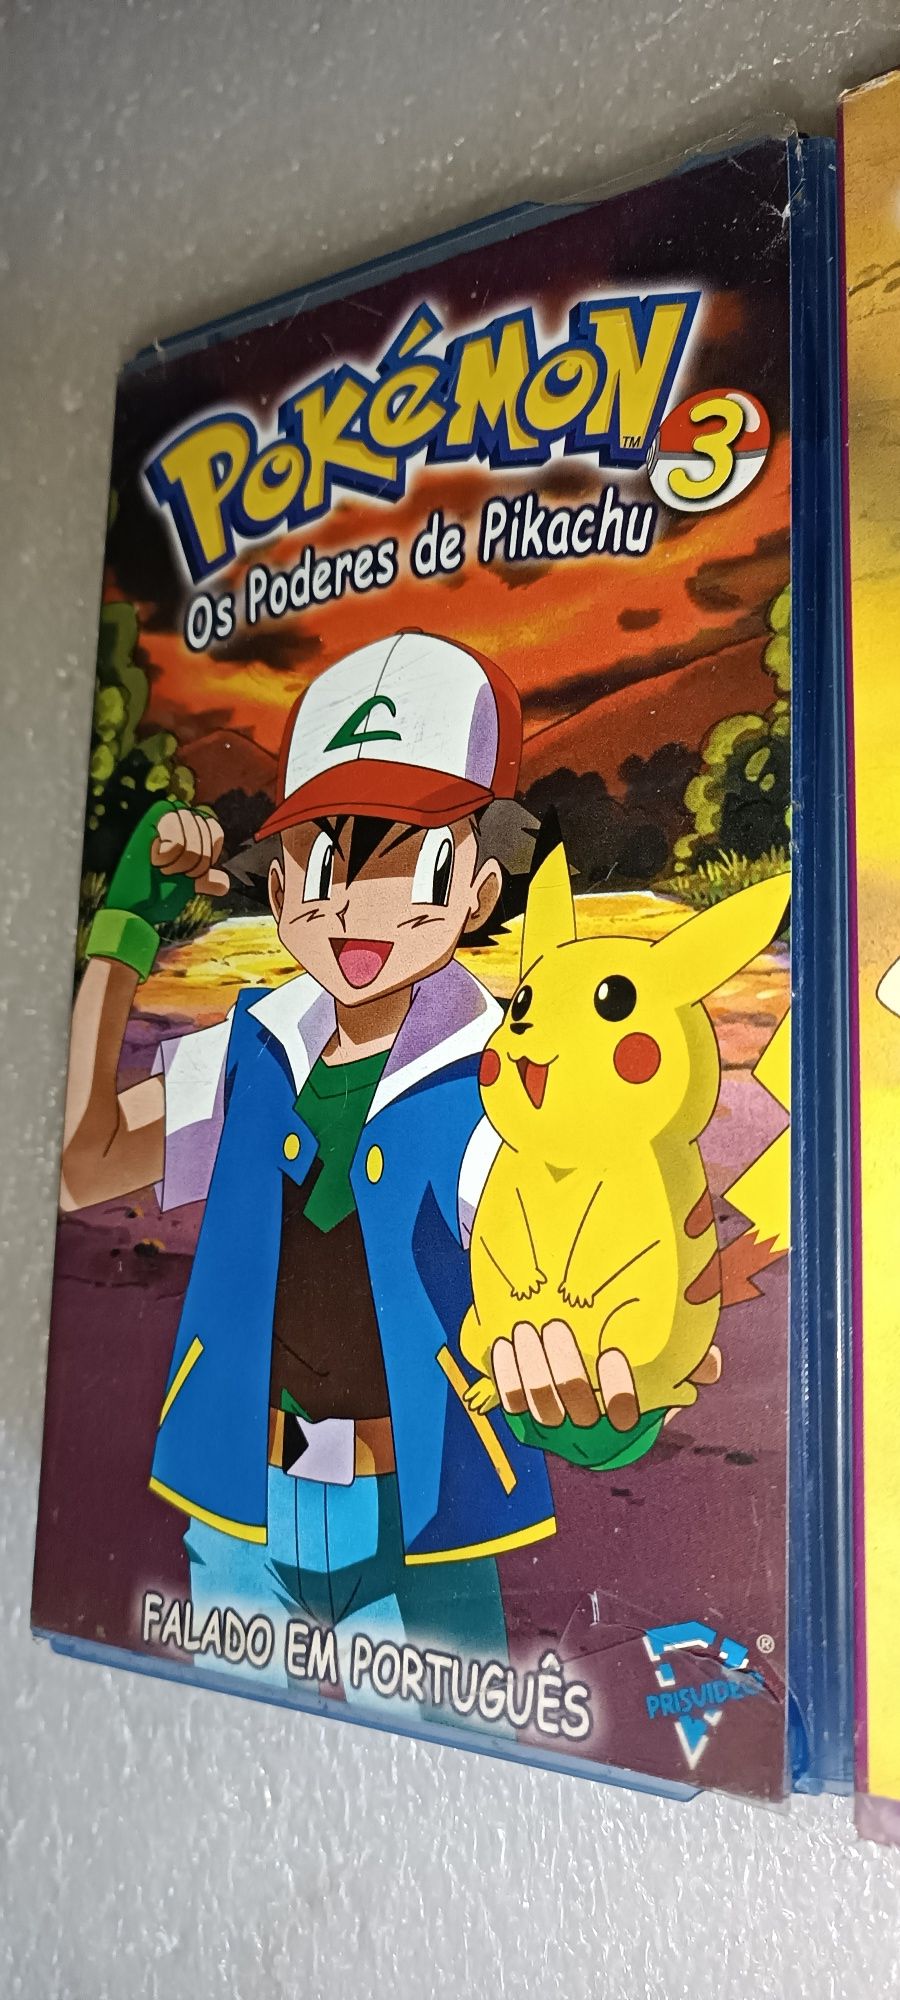 Pokémon 3 Antigas cassetes VHS